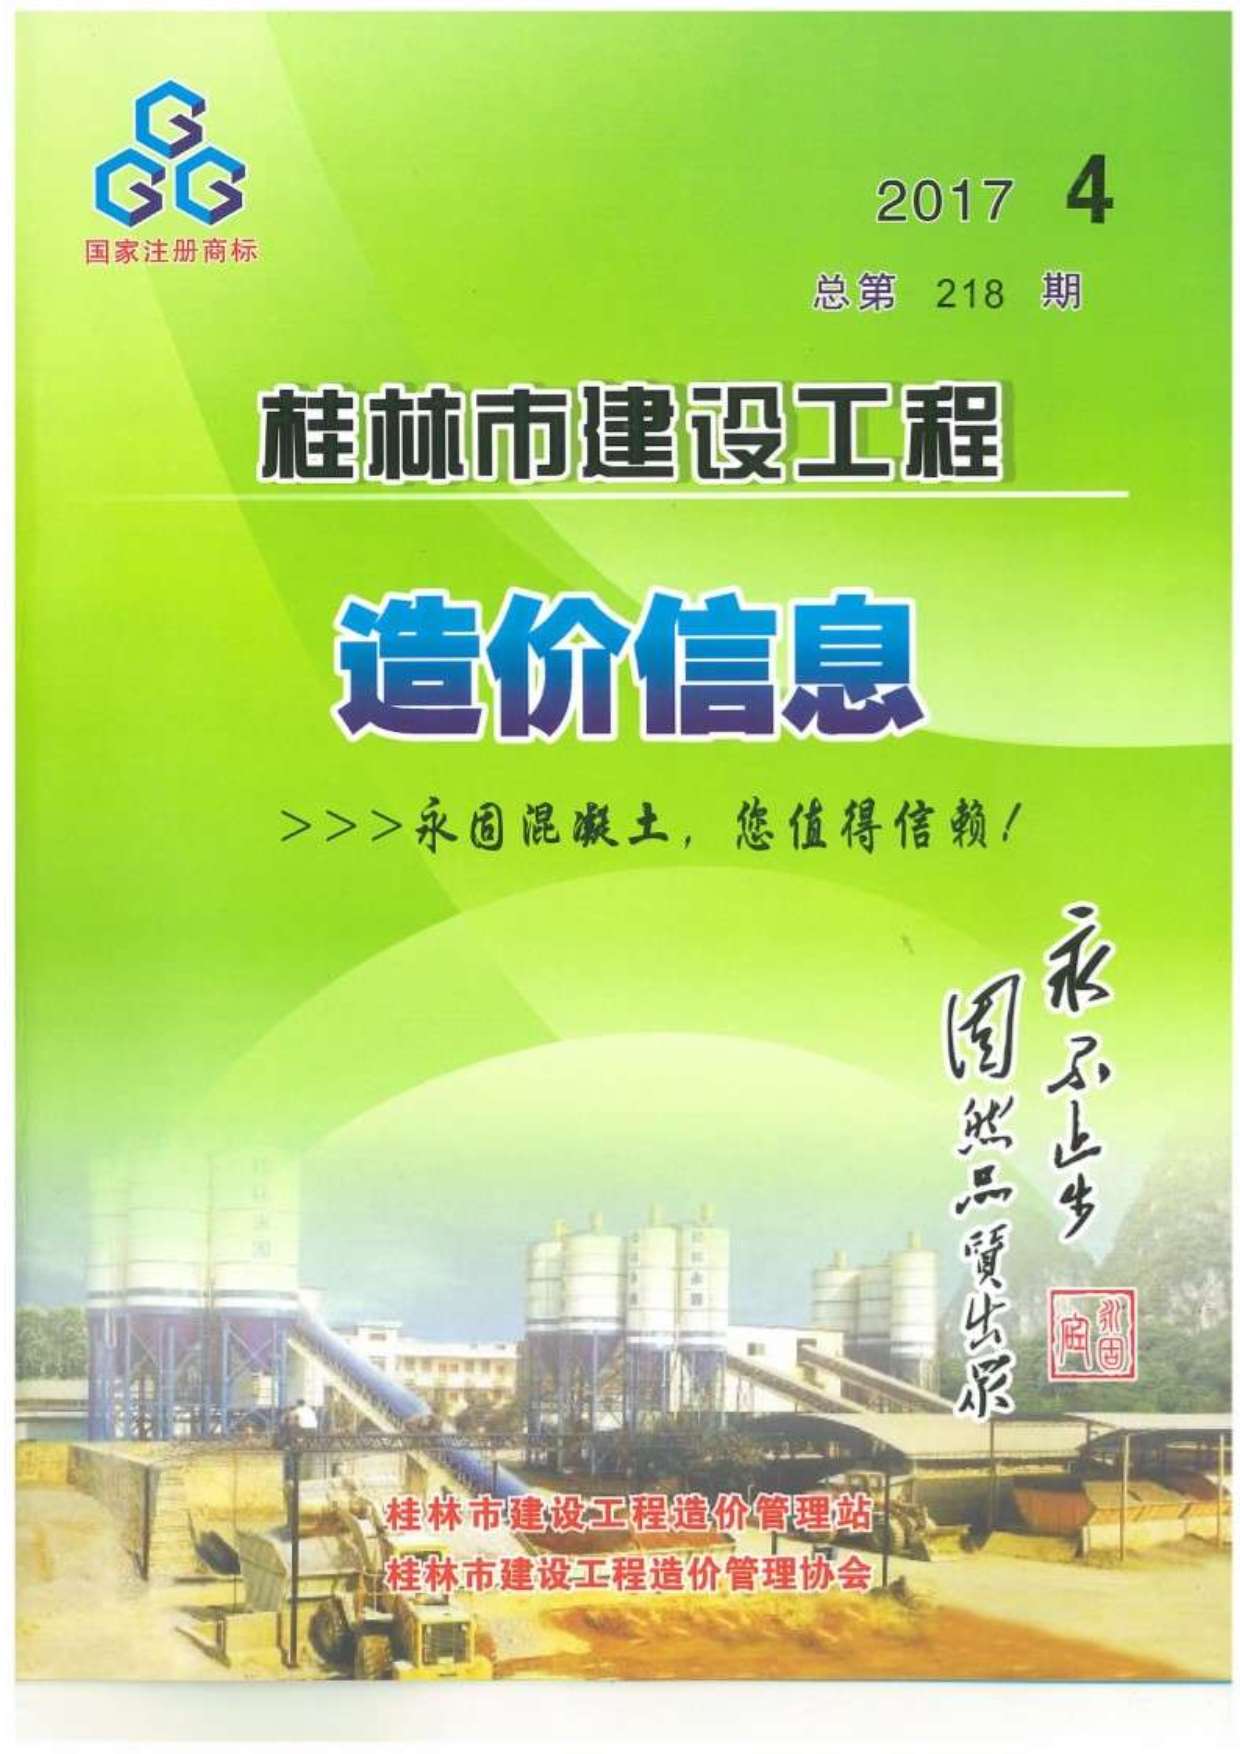 桂林市2017年4月建设工程造价信息造价库信息价